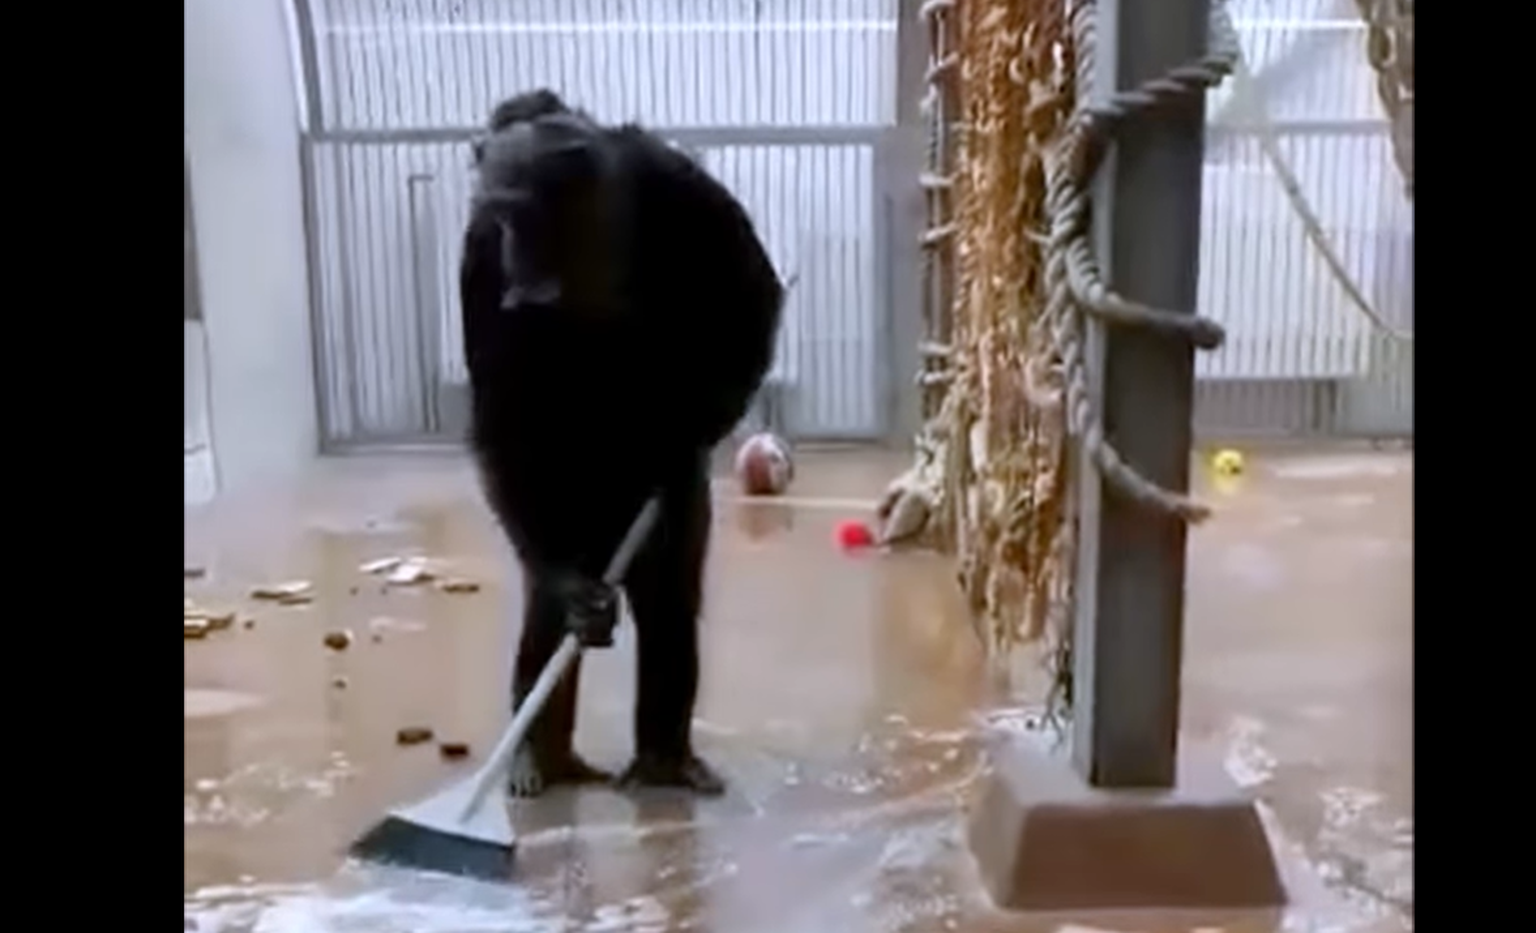 Tallinna loomaaias elav šimpans sai harja kätte ja hakkas koristama!